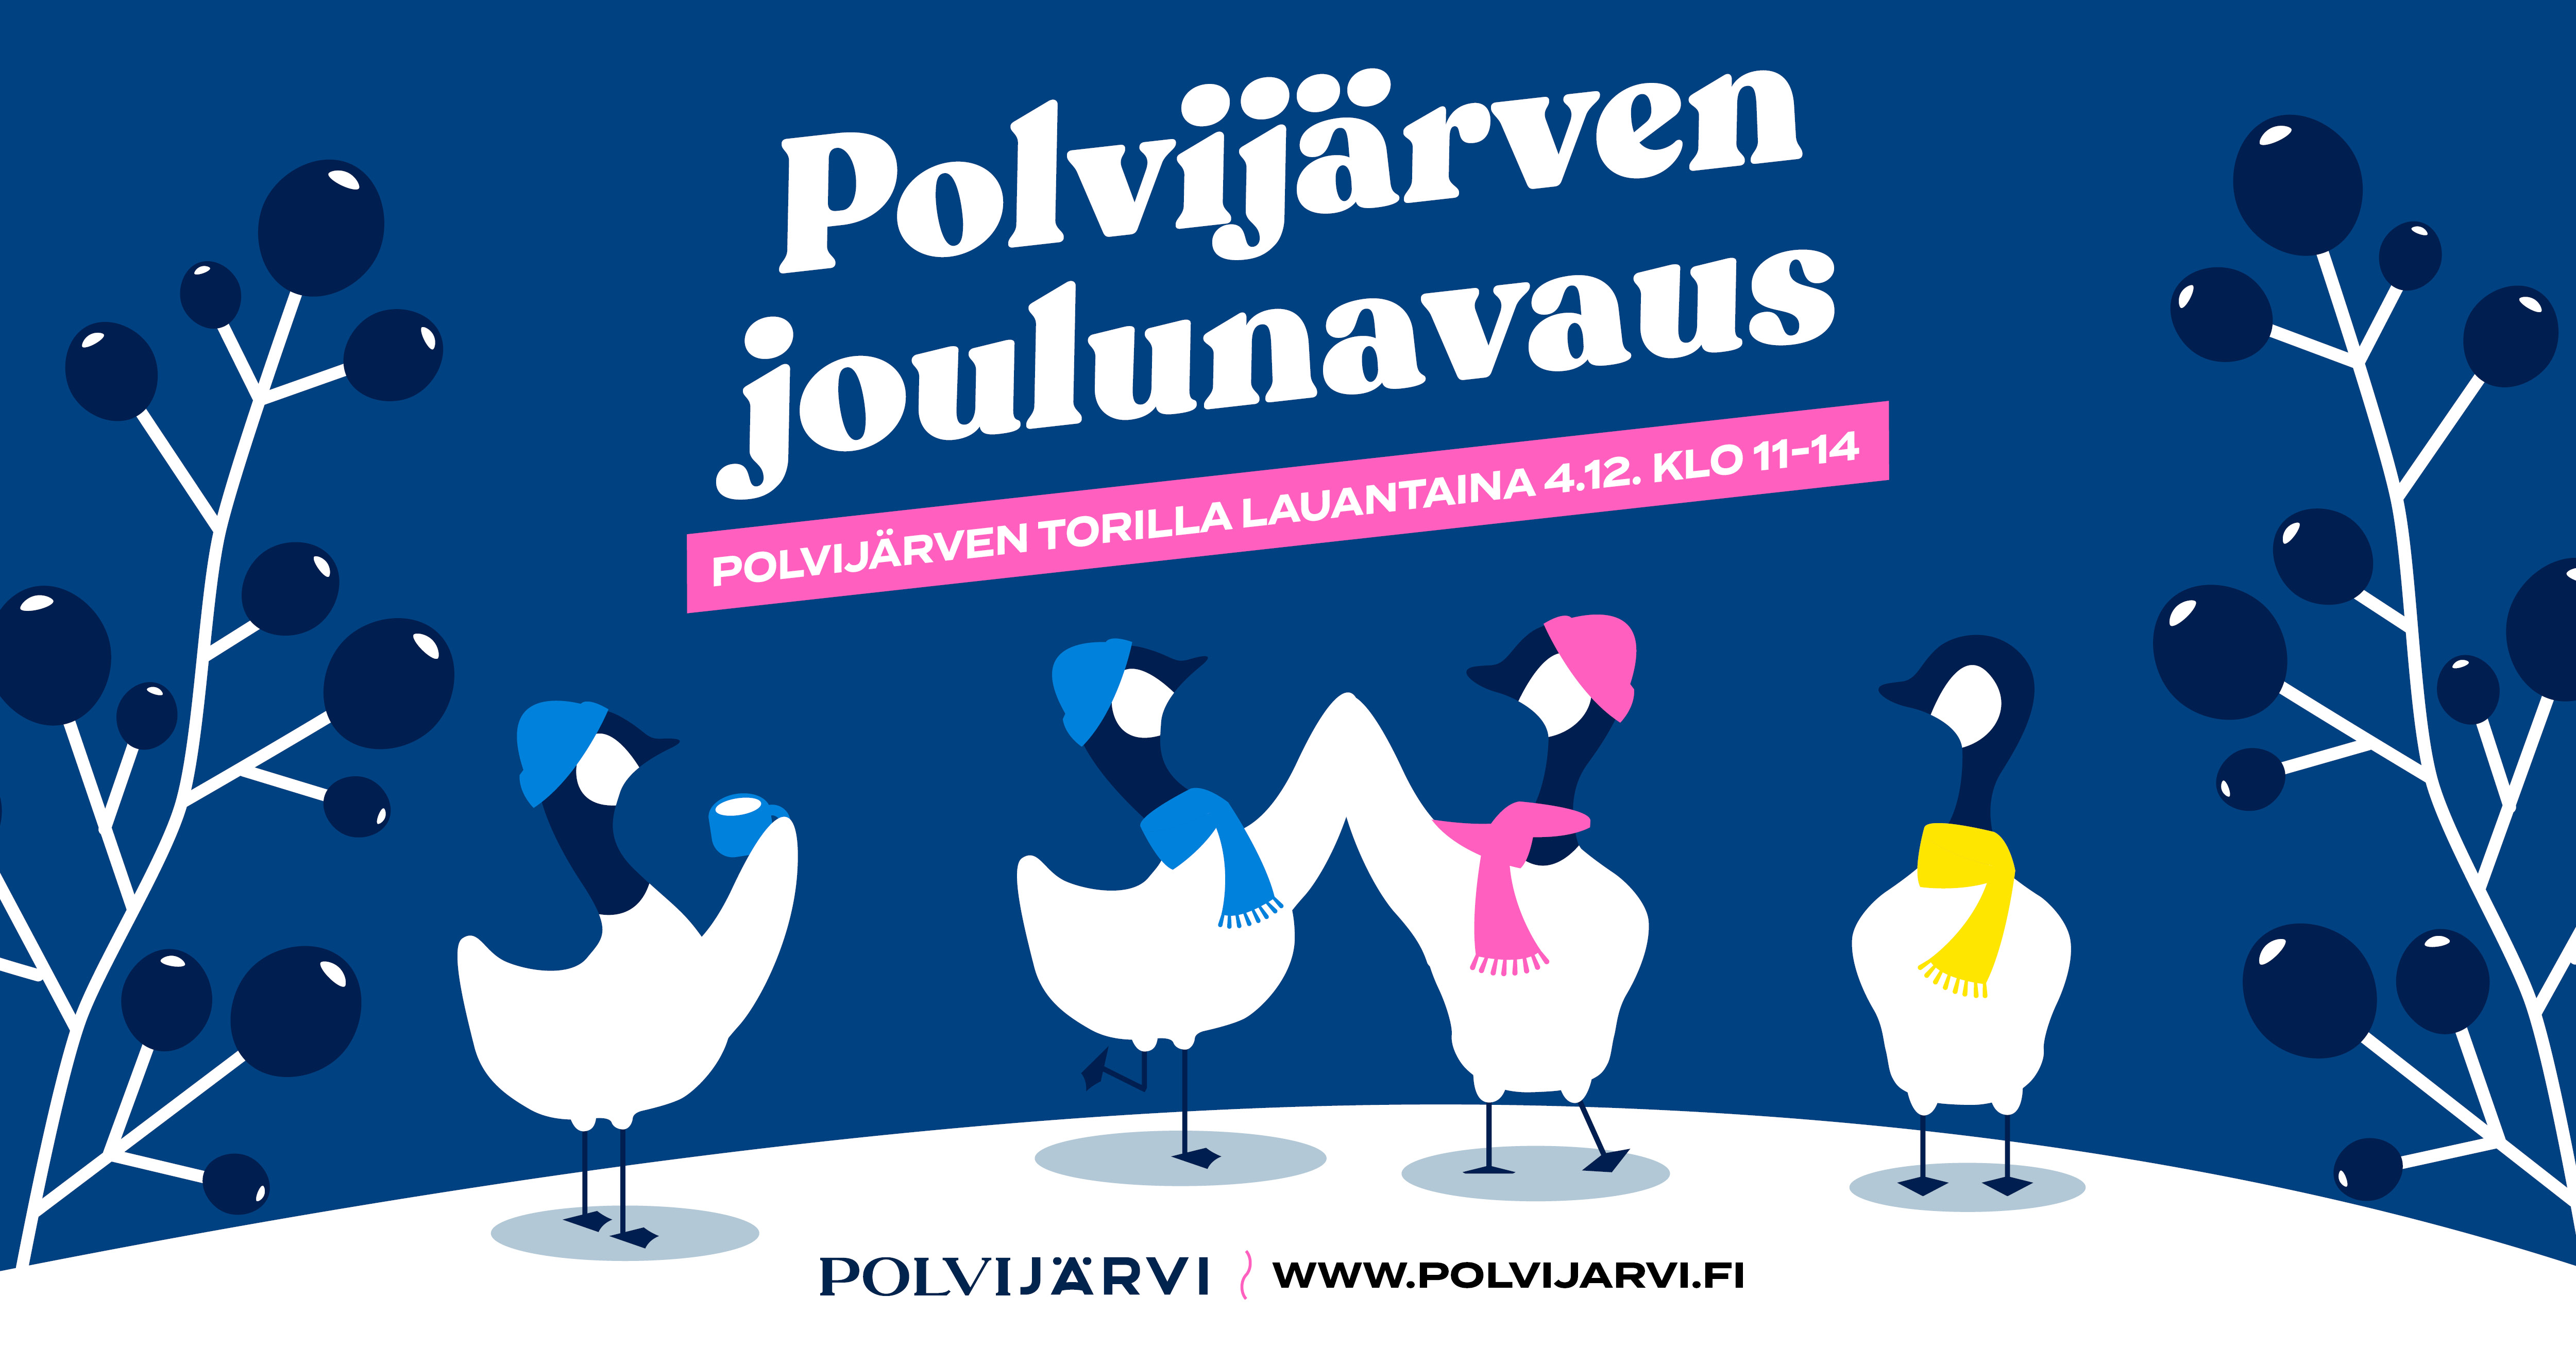 Kuvituskuva, jossa lukee Polvijärven joulunavaus Polvijärven torilla lauantaina 4.12. klo 11-14.